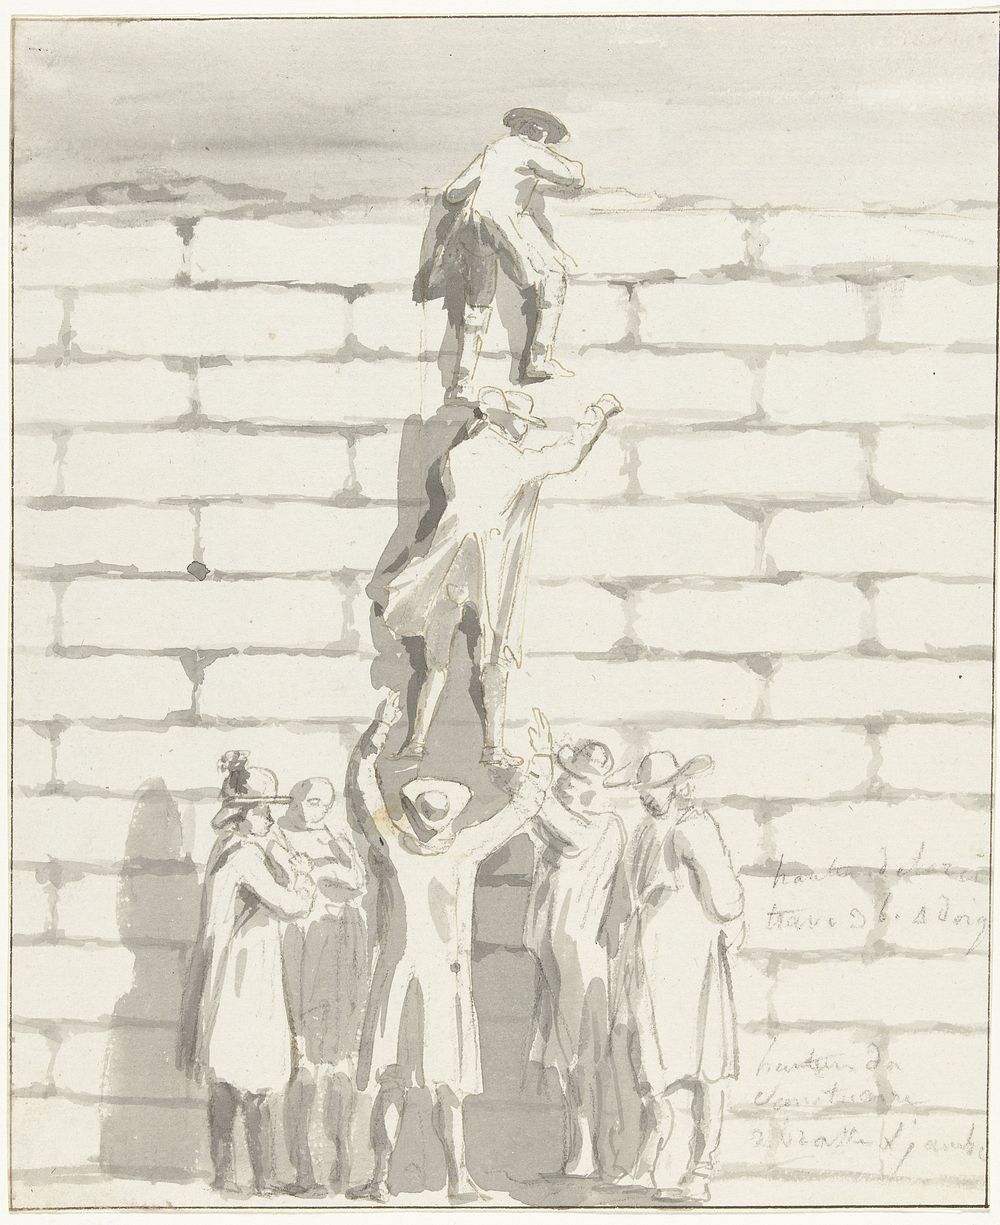 Willem Carel Dierkens klimt op de tempel om de ruïne op te meten (1778) by Louis Ducros